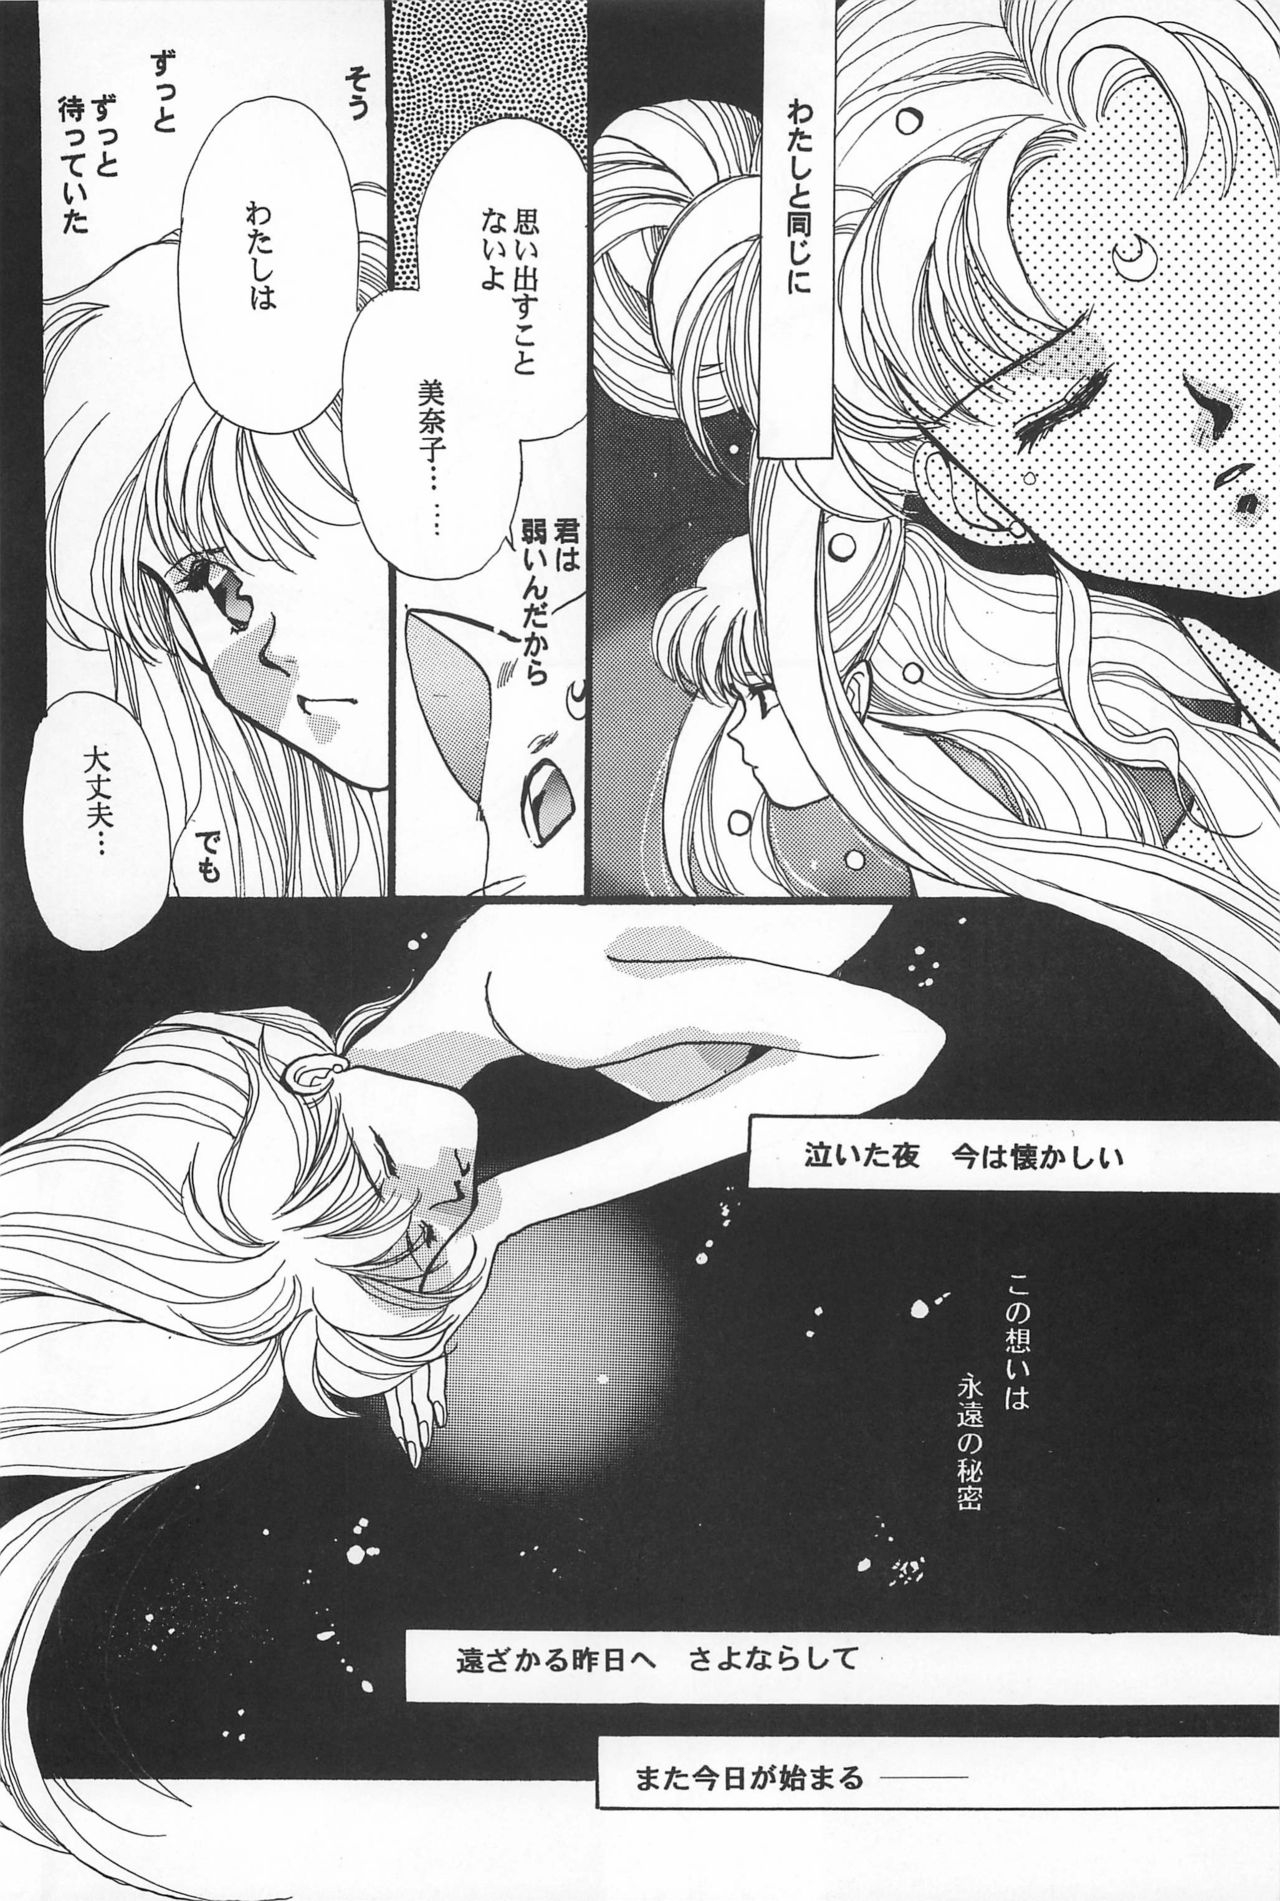 [Hello World (Muttri Moony)] Kaze no You ni Yume no You ni - Sailor Moon Collection (Sailor Moon) 115